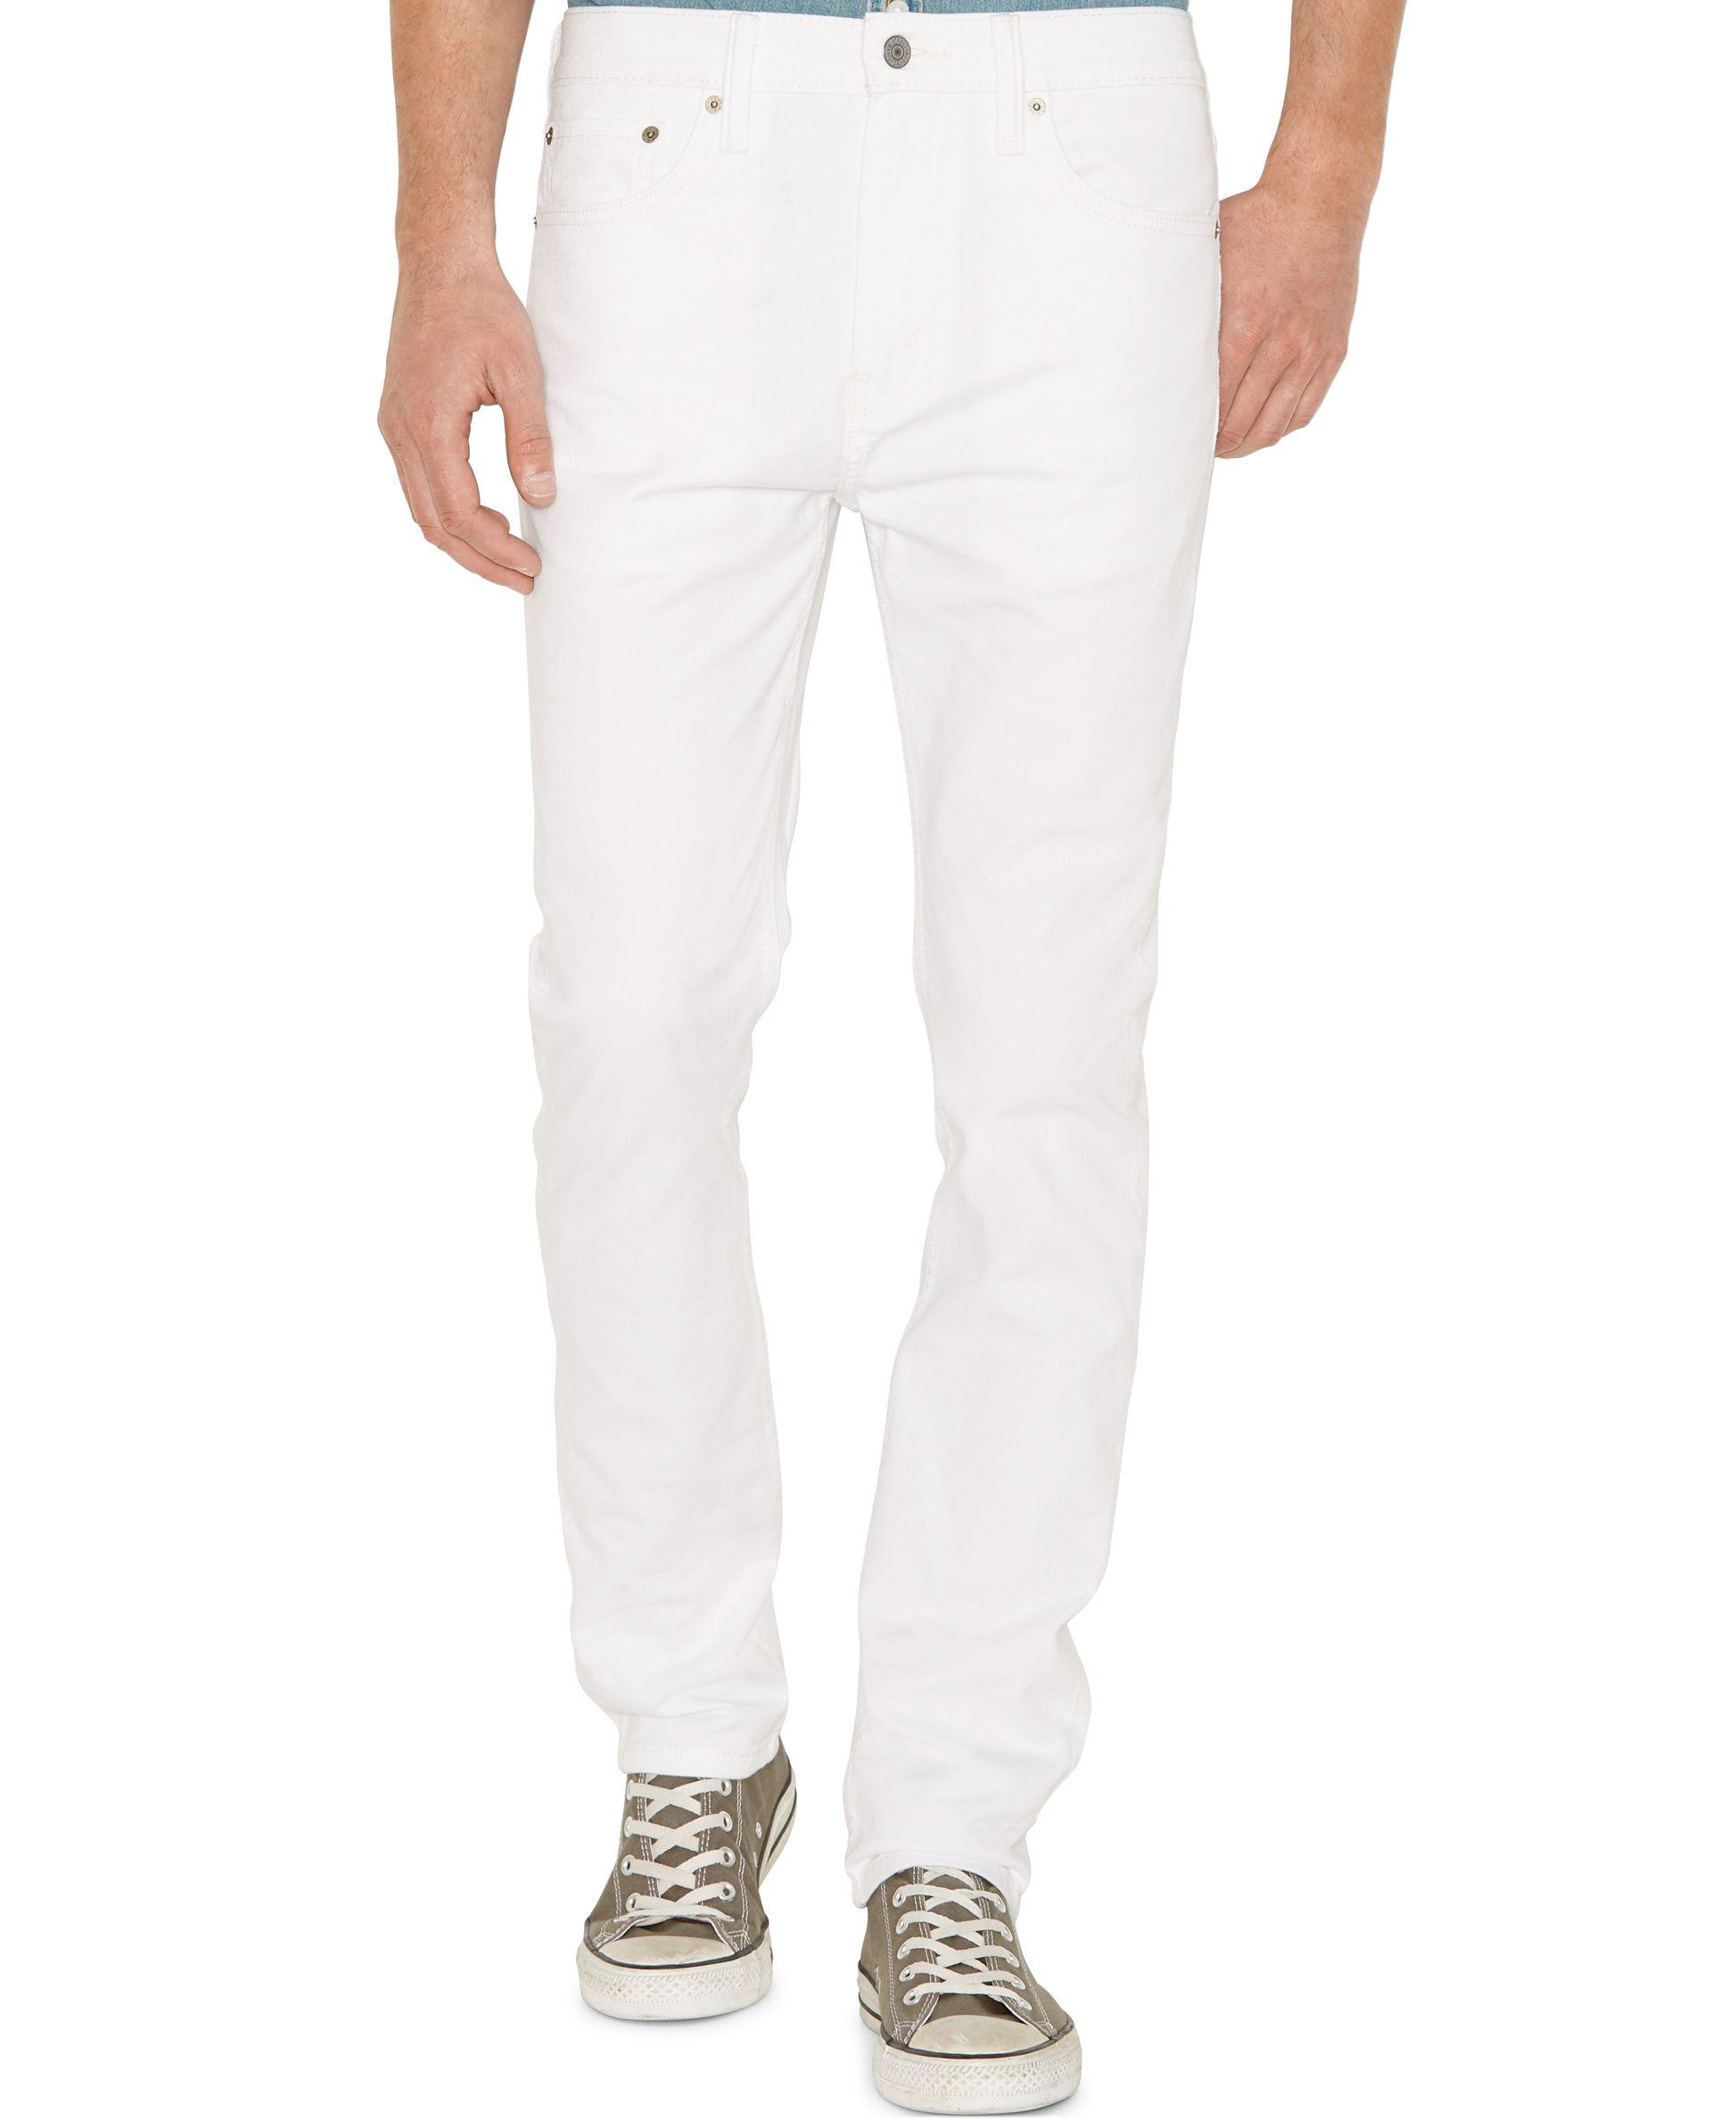 Top 83+ imagen levi’s 510 mens white jeans